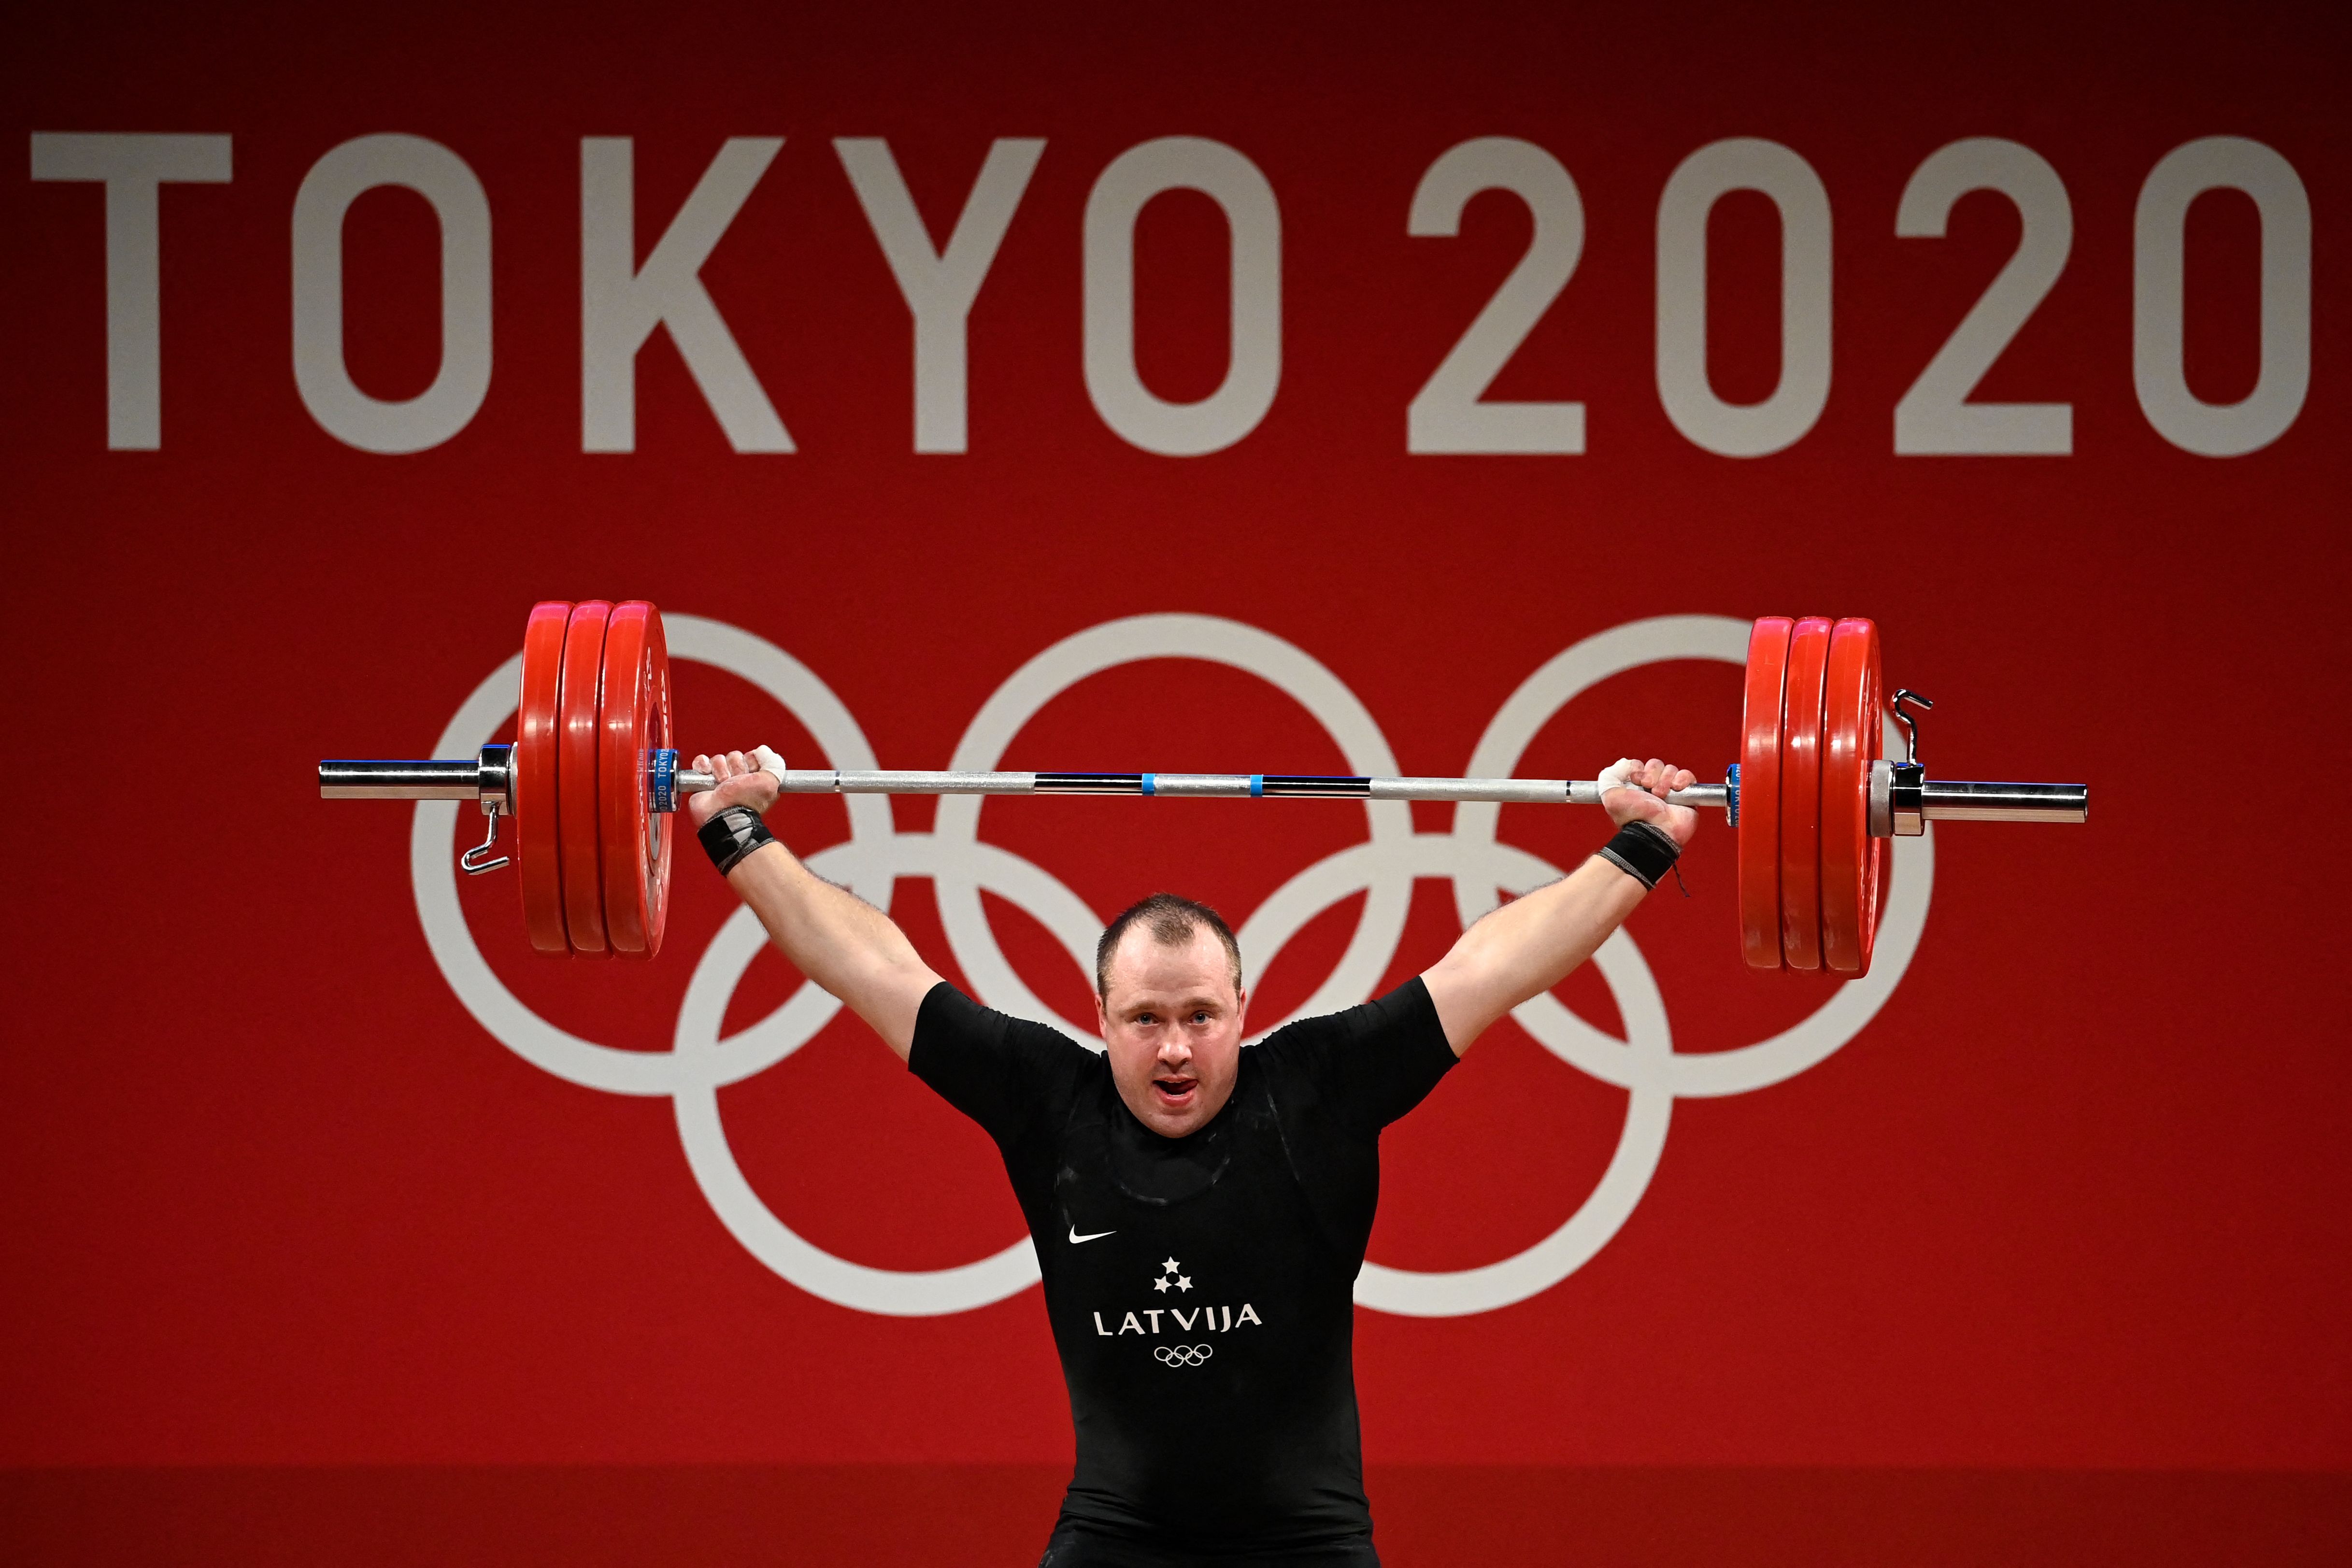 Plēsnieks izcīna olimpisko bronzu svarcelšanā